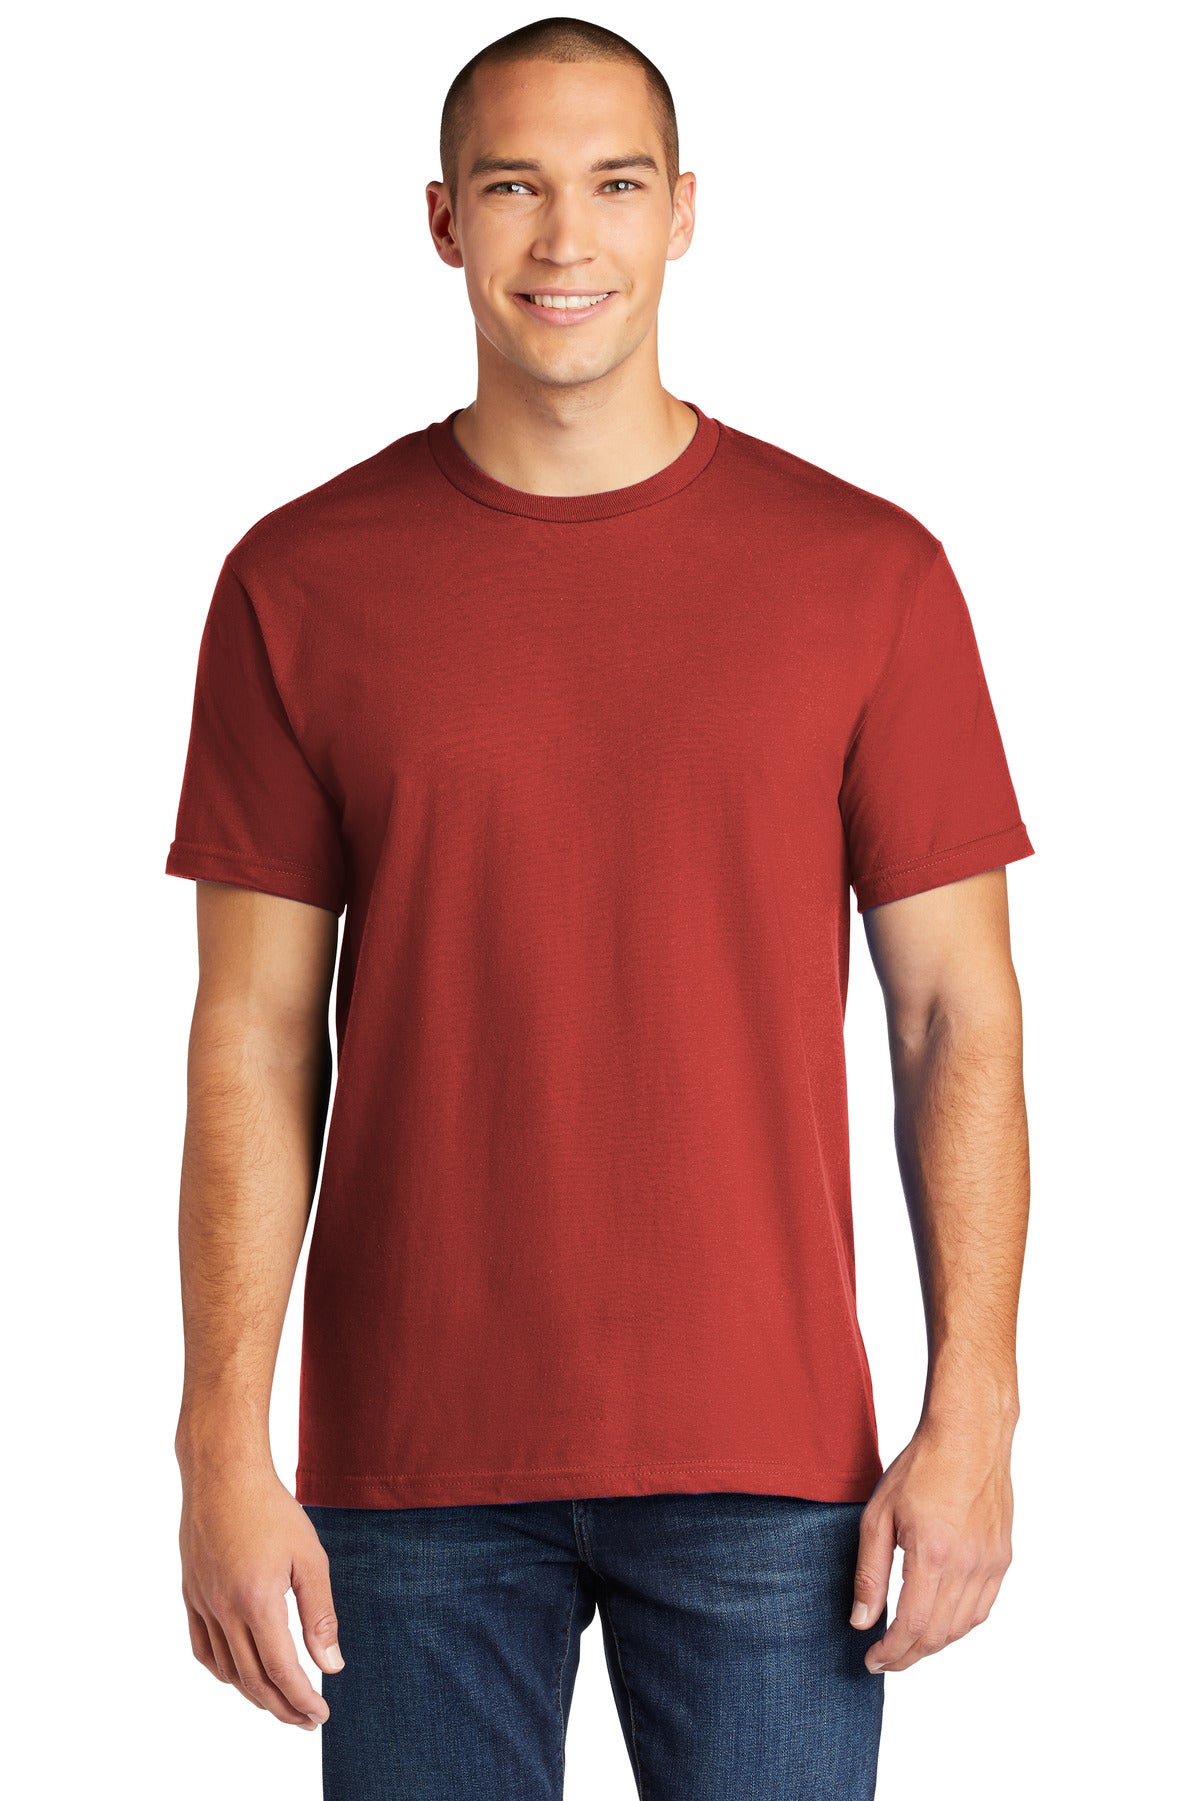 Gildan Hammer ® T-Shirt. H000